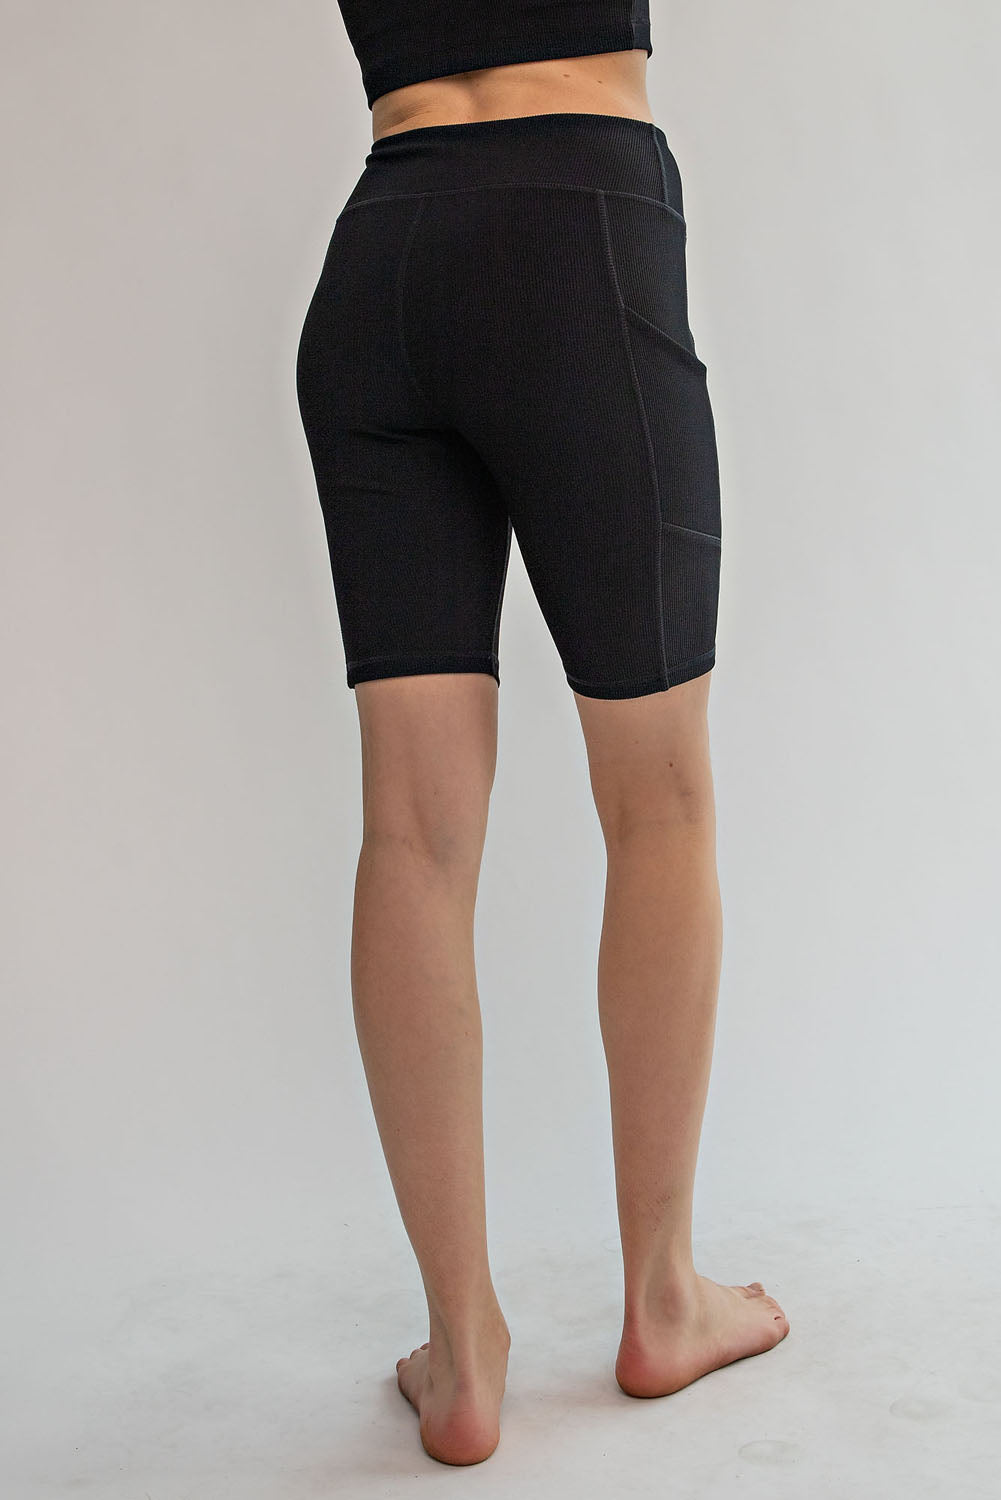 Ribbed Biker Shorts with Pockets